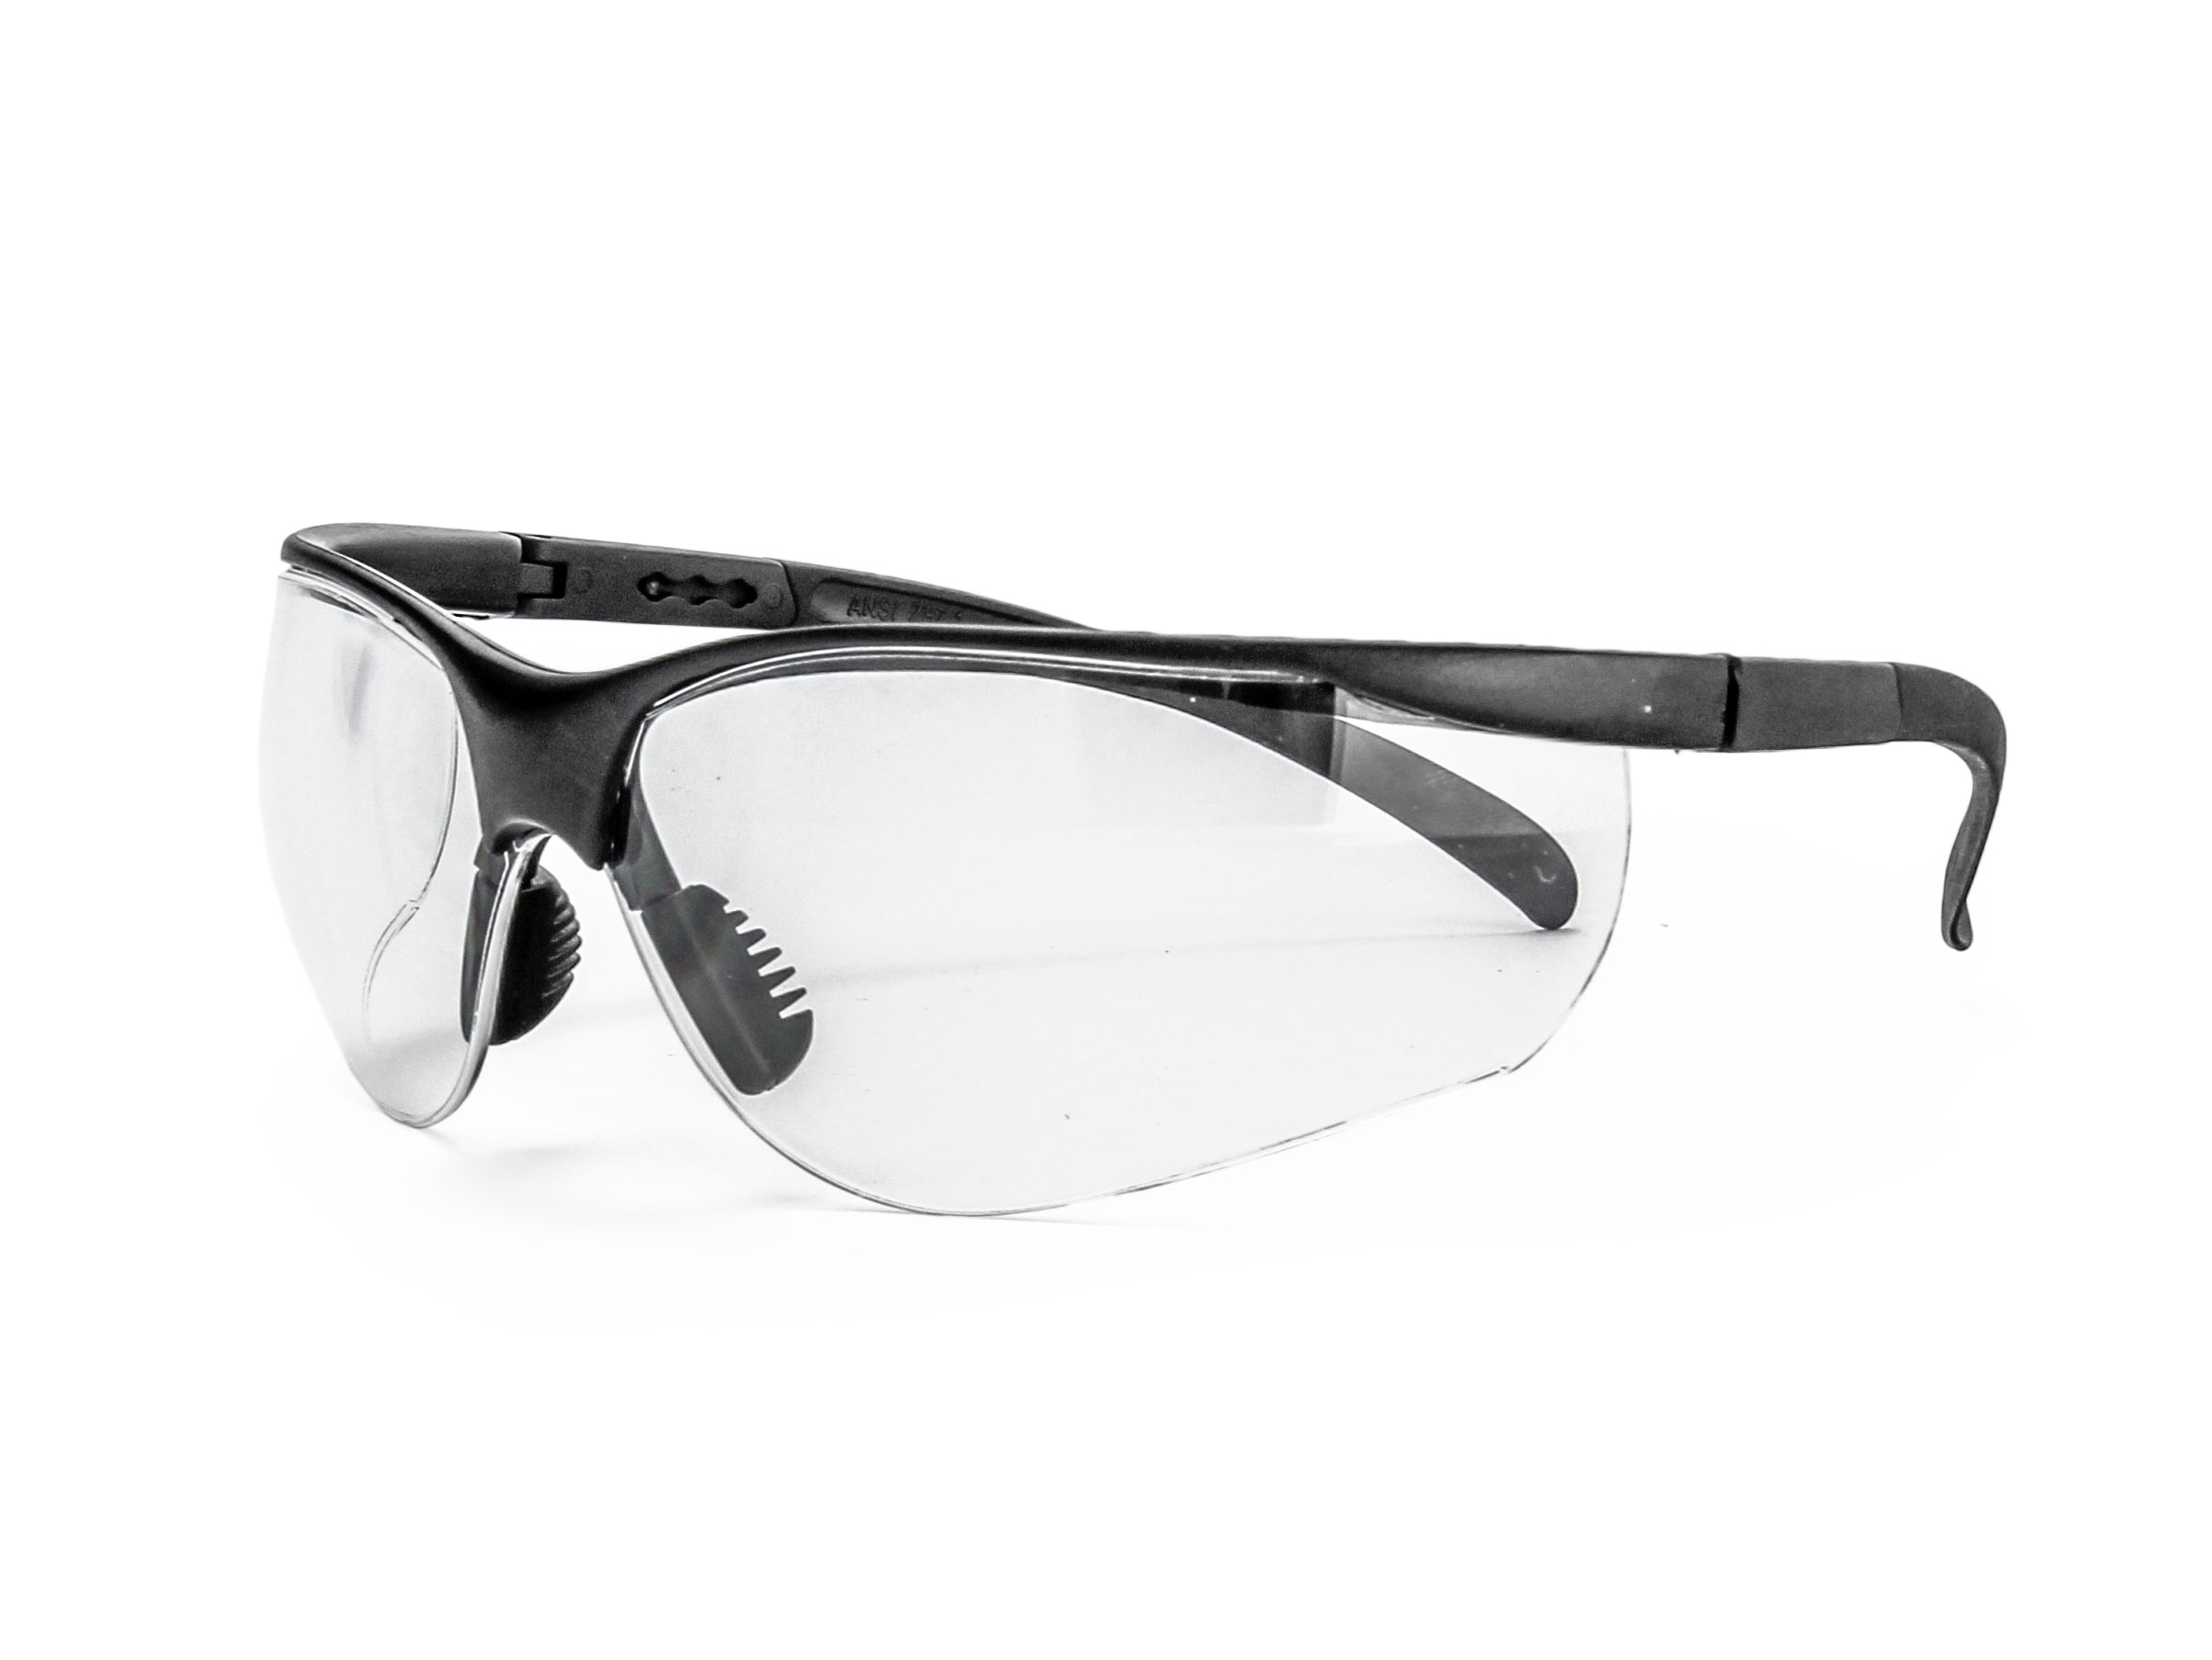 Image of Okulary ochronne RealHunter Protect ANSI białe (LG3048 white)